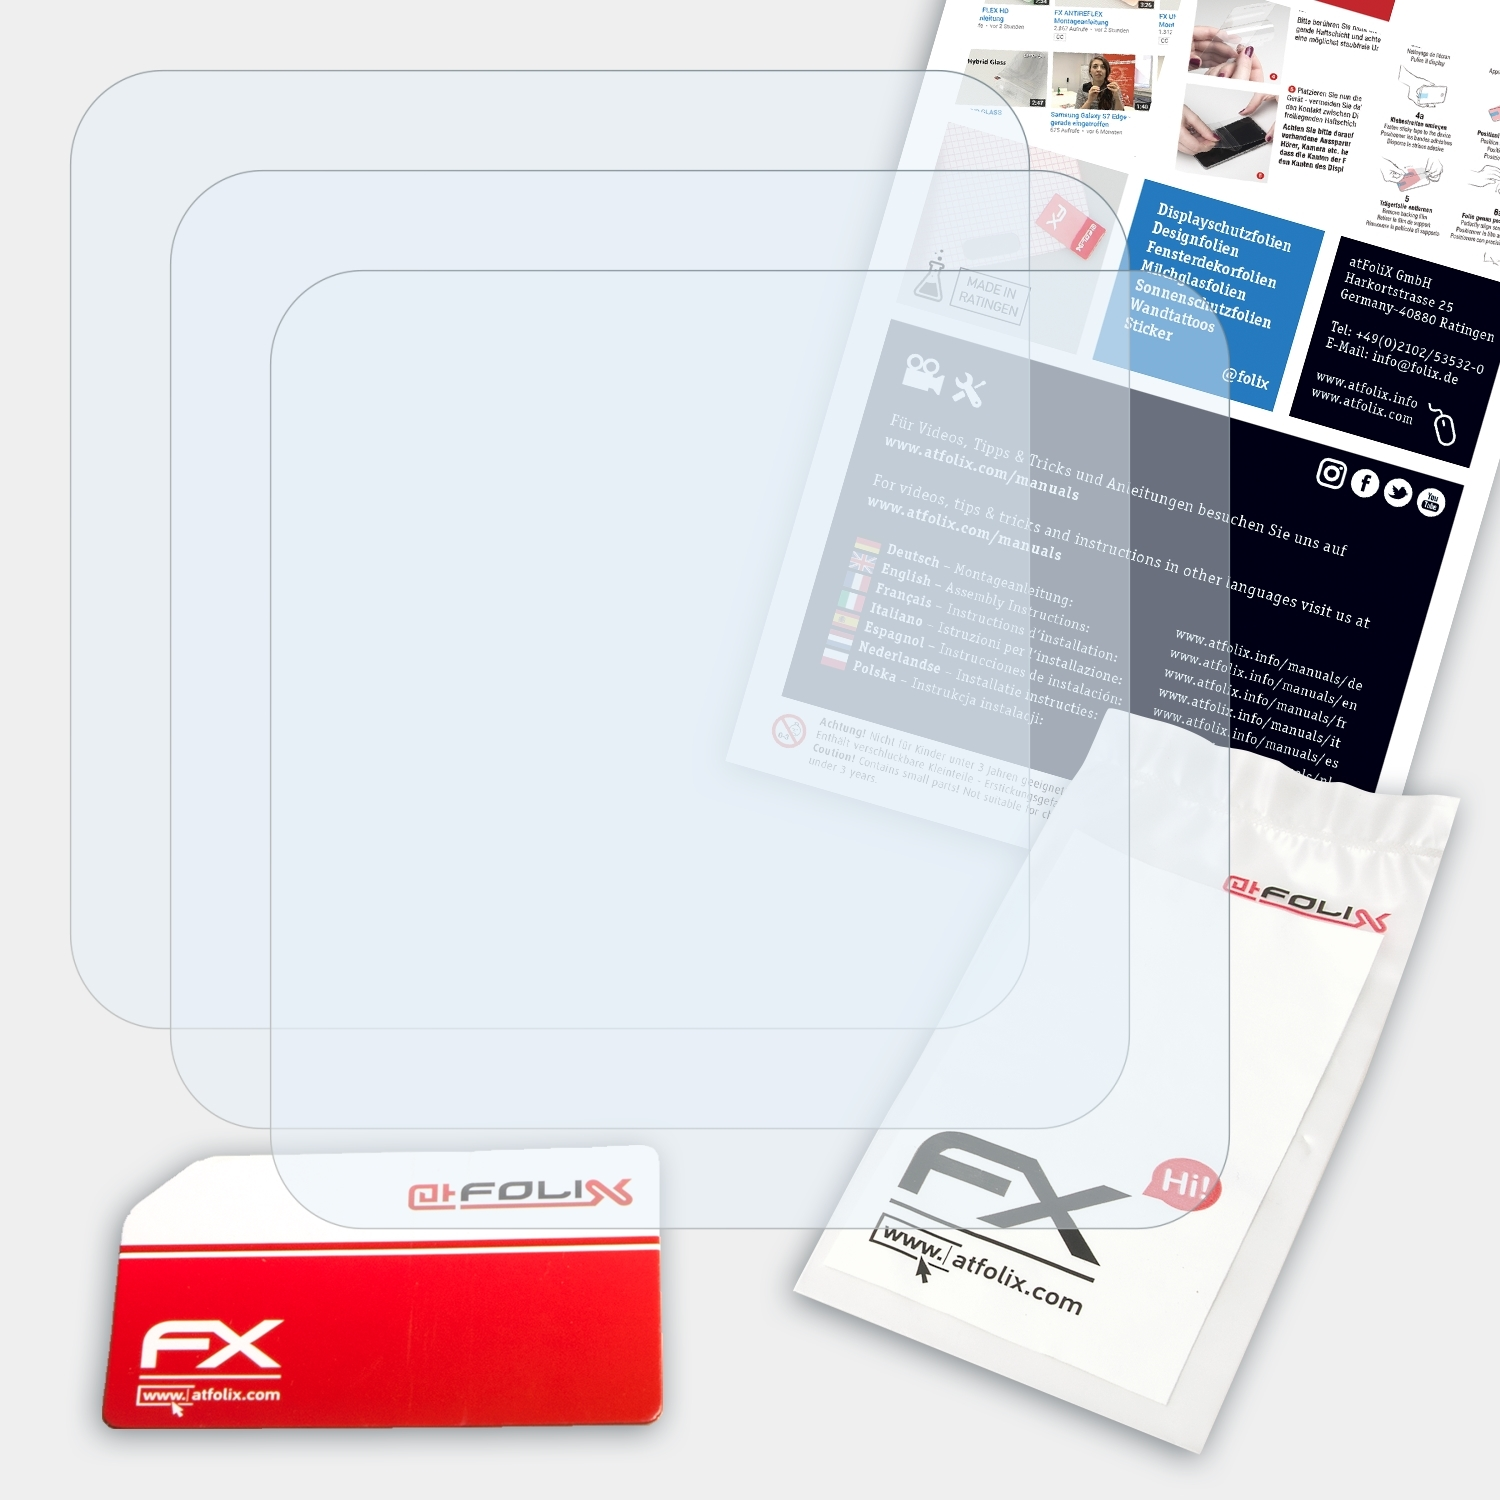 ATFOLIX 3x FX-Clear Displayschutz(für Apple nano iPod 6G)